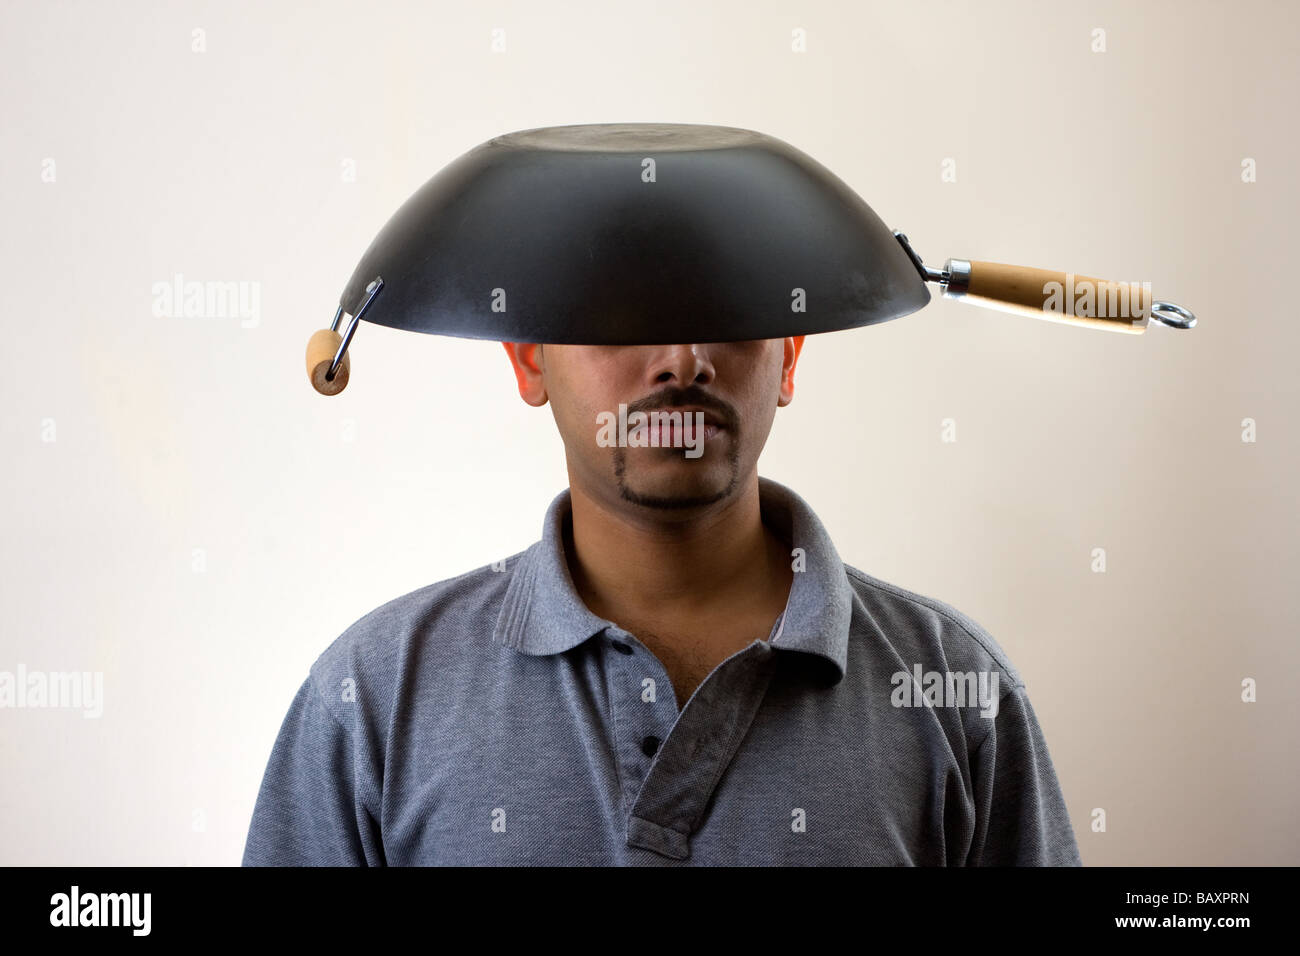 Mann mit Wok auf Kopf isoliert auf weiss Stockfotografie - Alamy